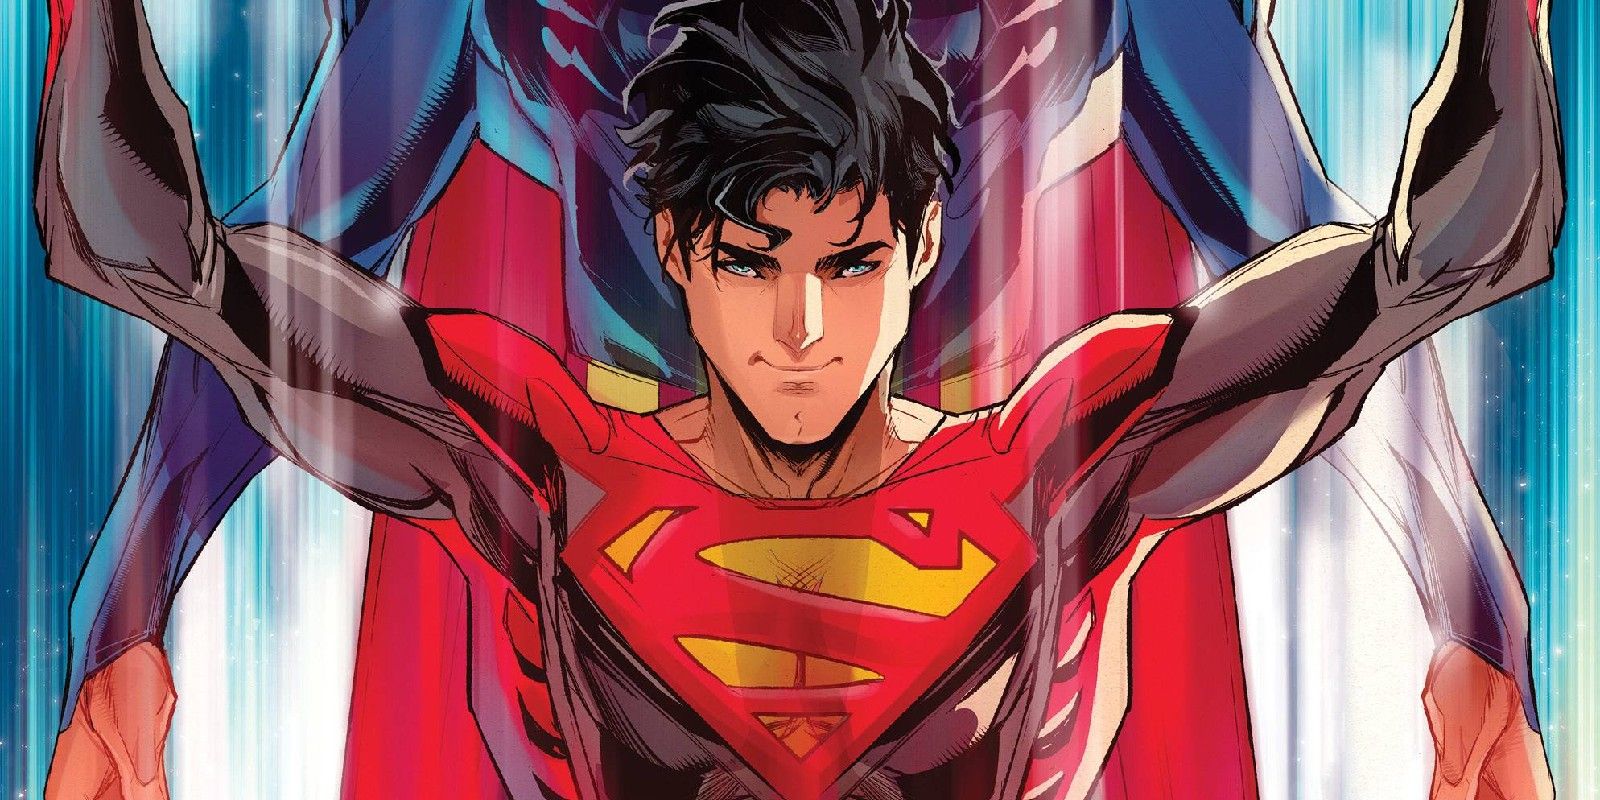 "Superman cambió mi visión del mundo": el cosplay de Superman es el máximo tributo a la nueva identidad de Jon Kent